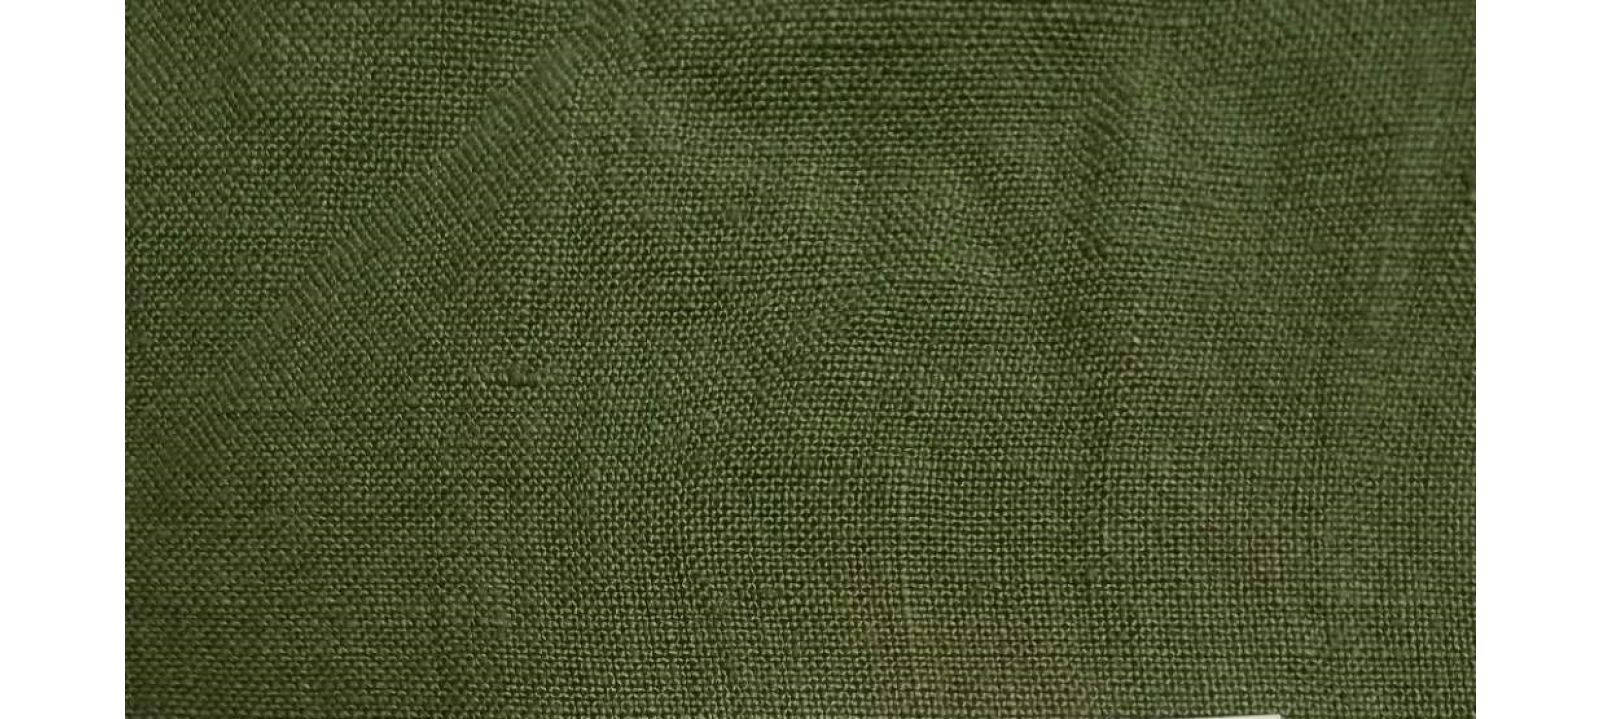 AHL2450 hemp/organic cotton fabric